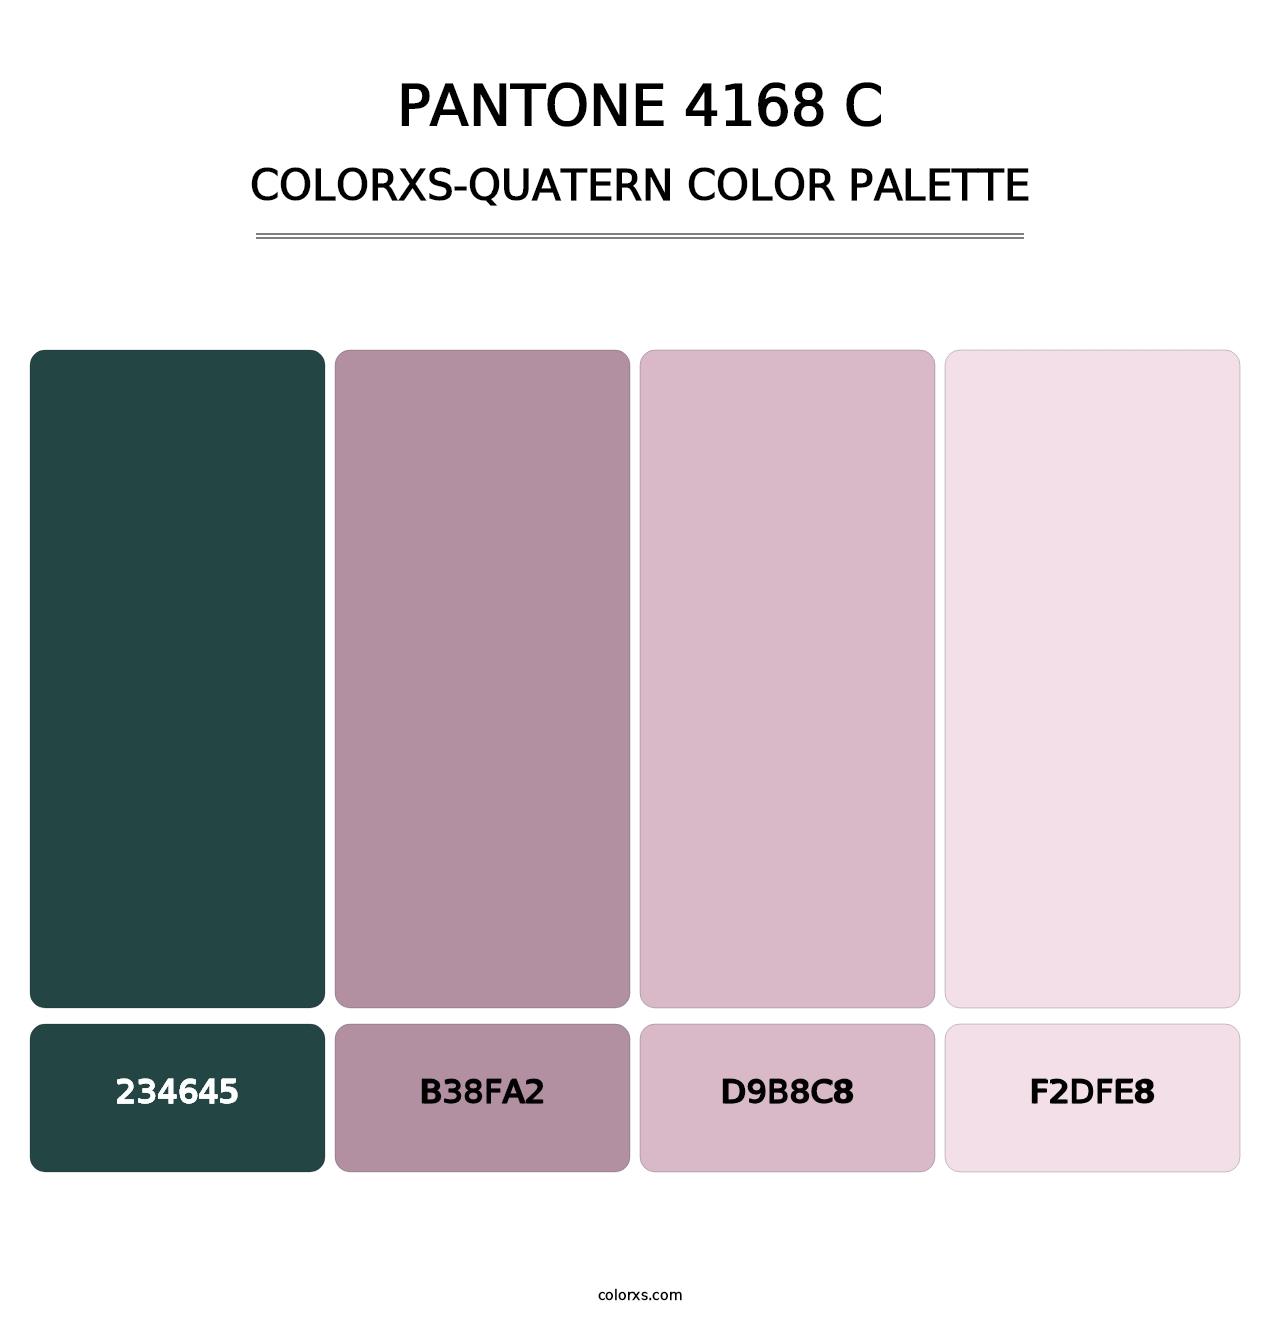 PANTONE 4168 C - Colorxs Quatern Palette